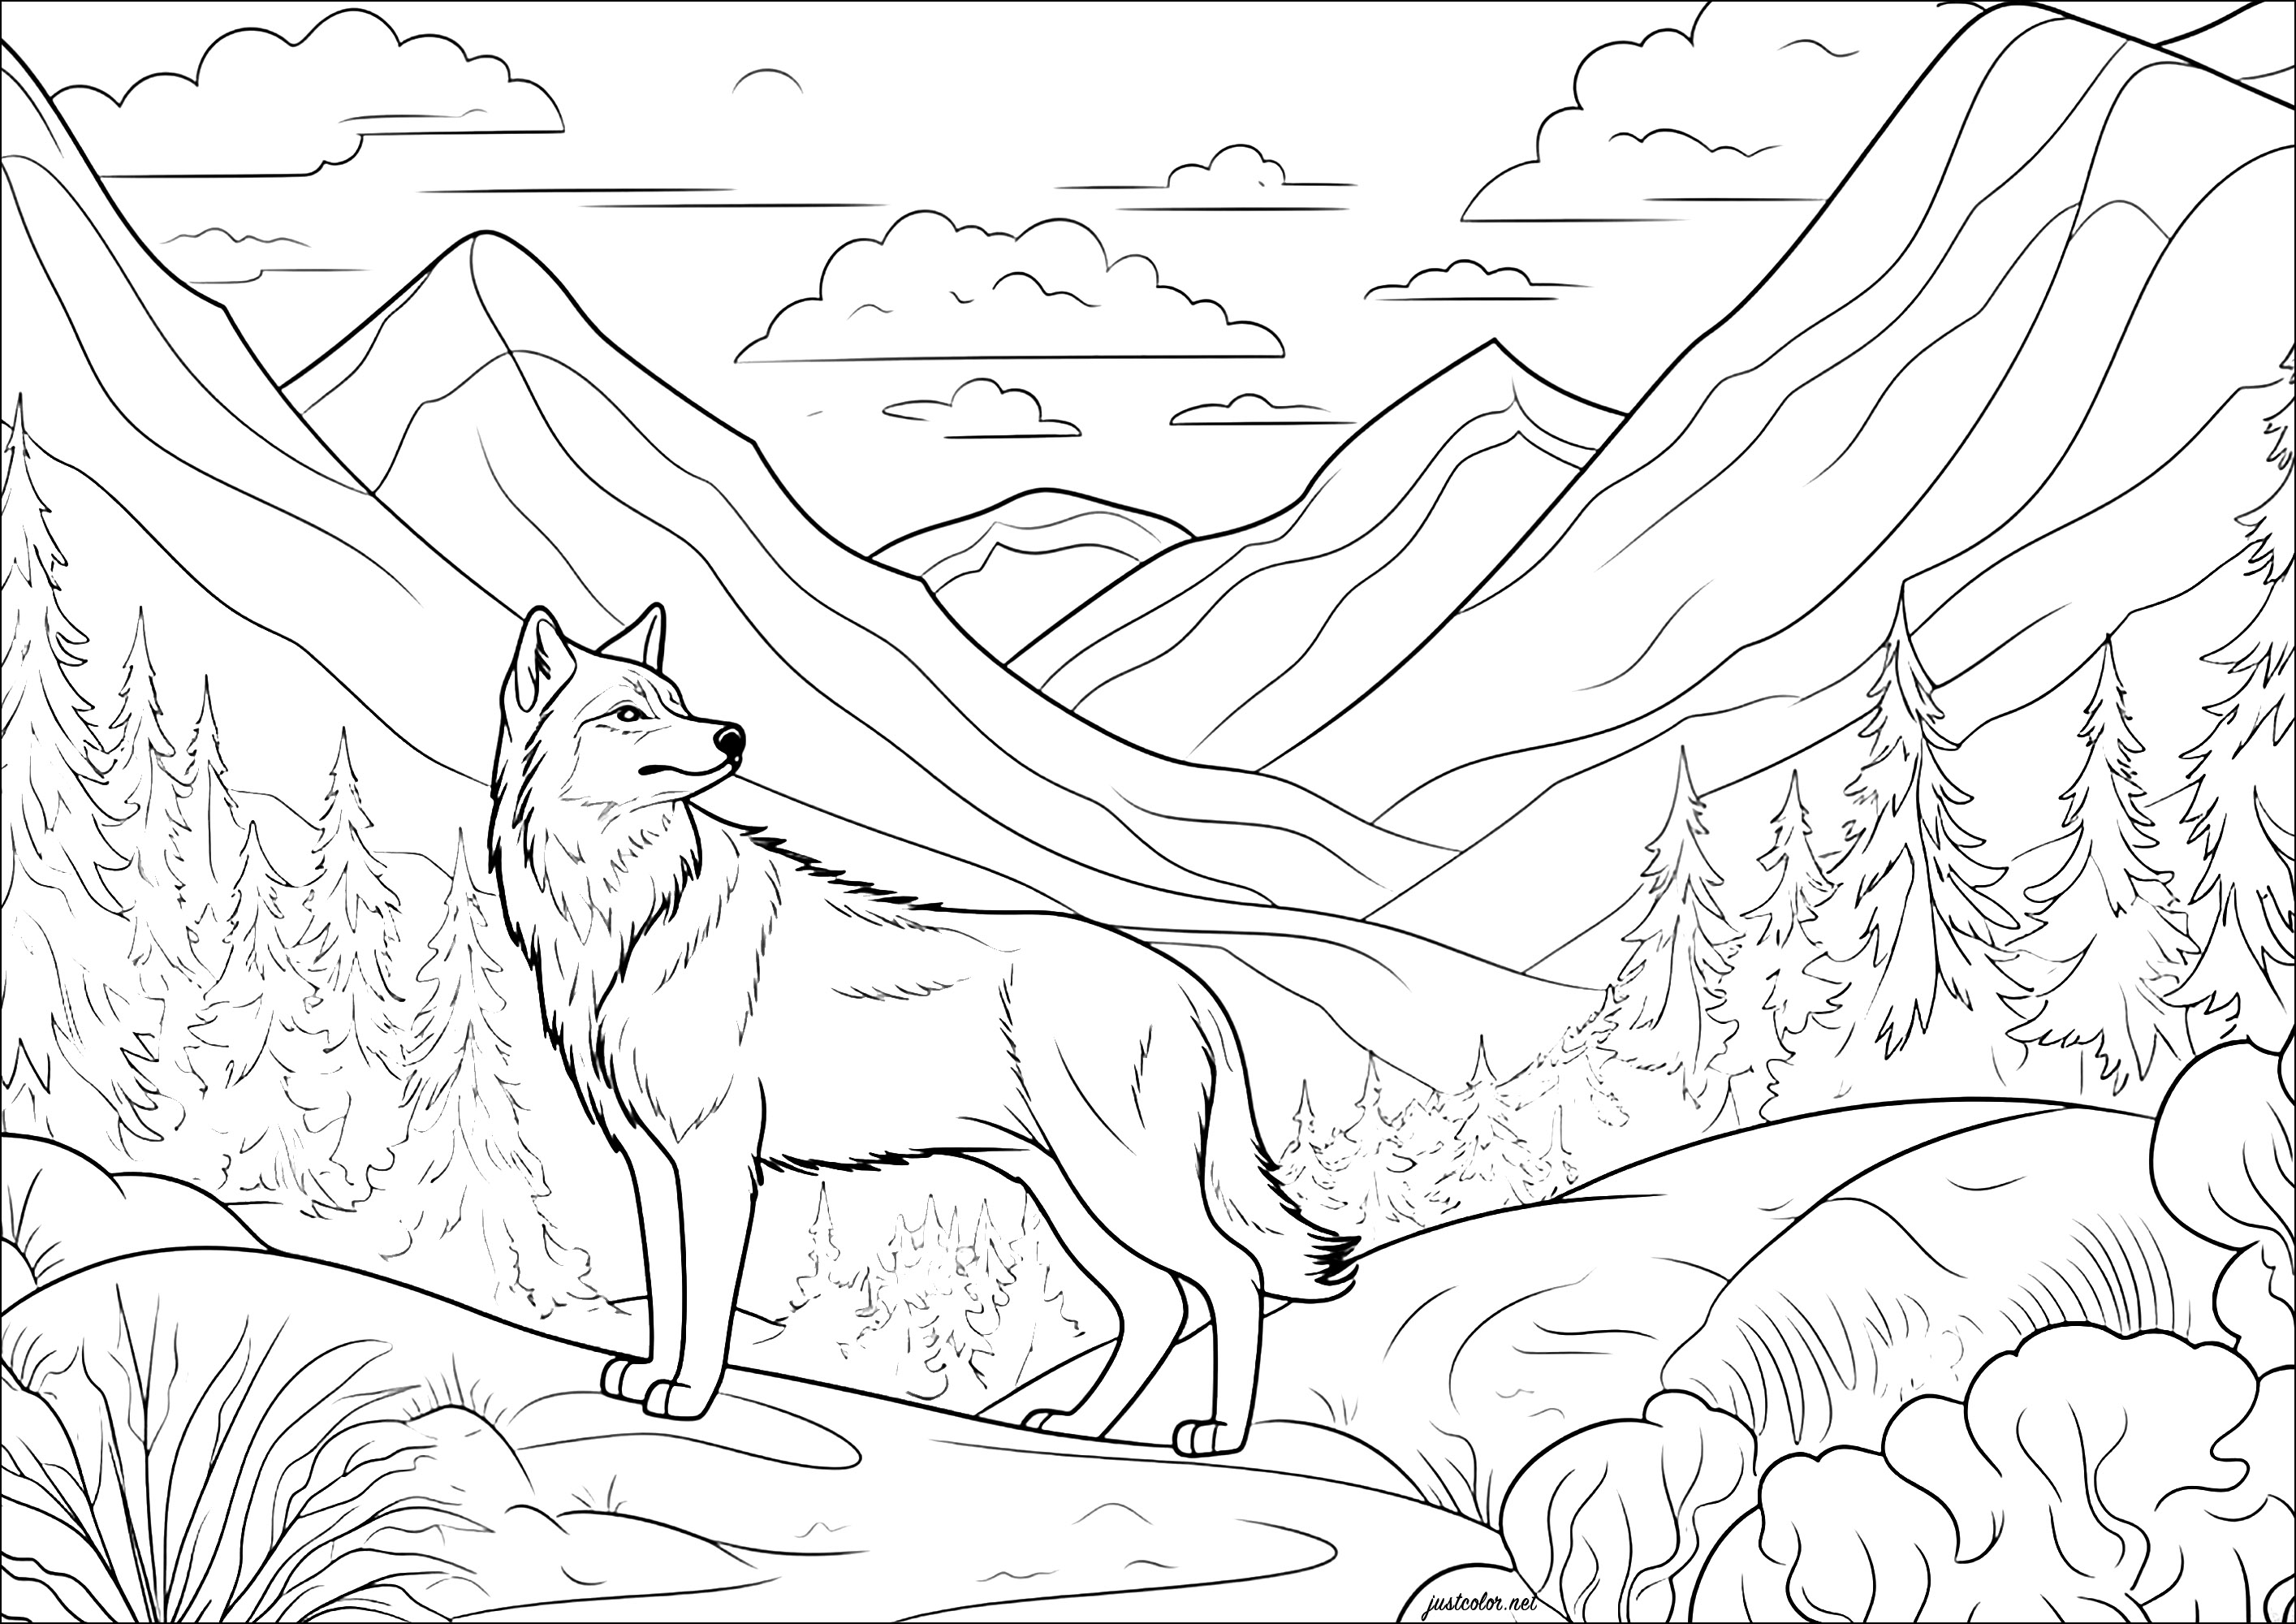 Der Wolf im Berg. Eine friedliche, ruhige Szene: Man spürt die Gelassenheit, die von dieser schönen Ausmalvorlage ausgeht, die einen sehr realistisch gezeichneten Wolf zeigt, der in eine hübsche Landschaft voller Details zum Ausmalen integriert ist.